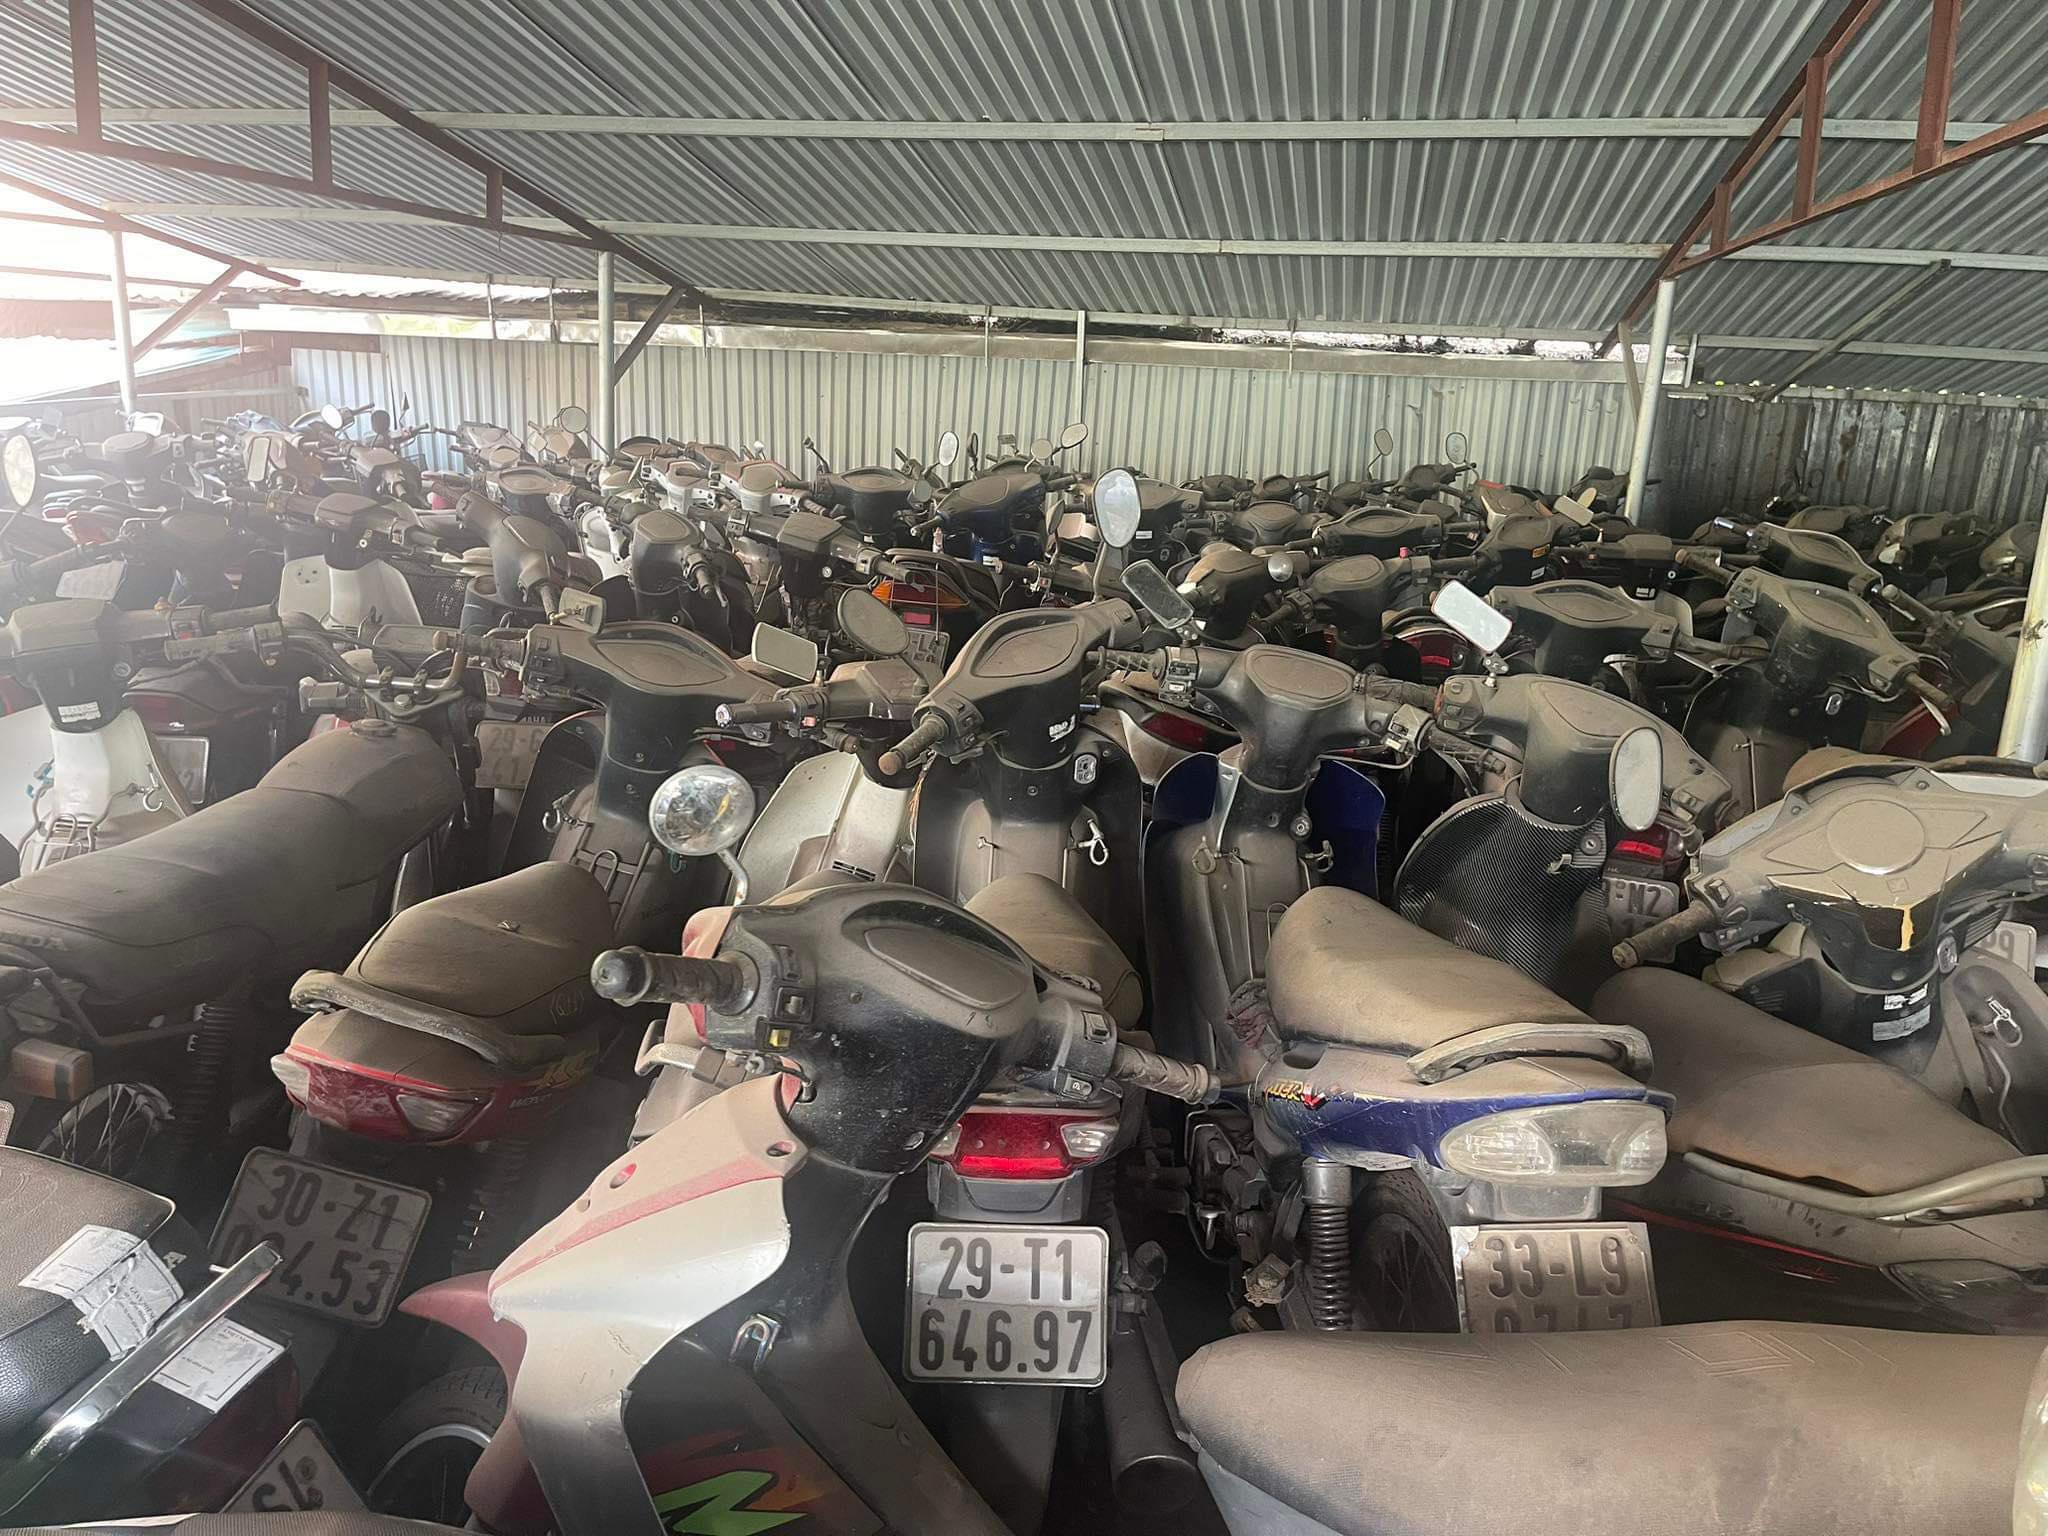 Cận cảnh ‘nghĩa địa xe cũ’ ở Hà Nội Cần có phương án xử lý để không lãng phí